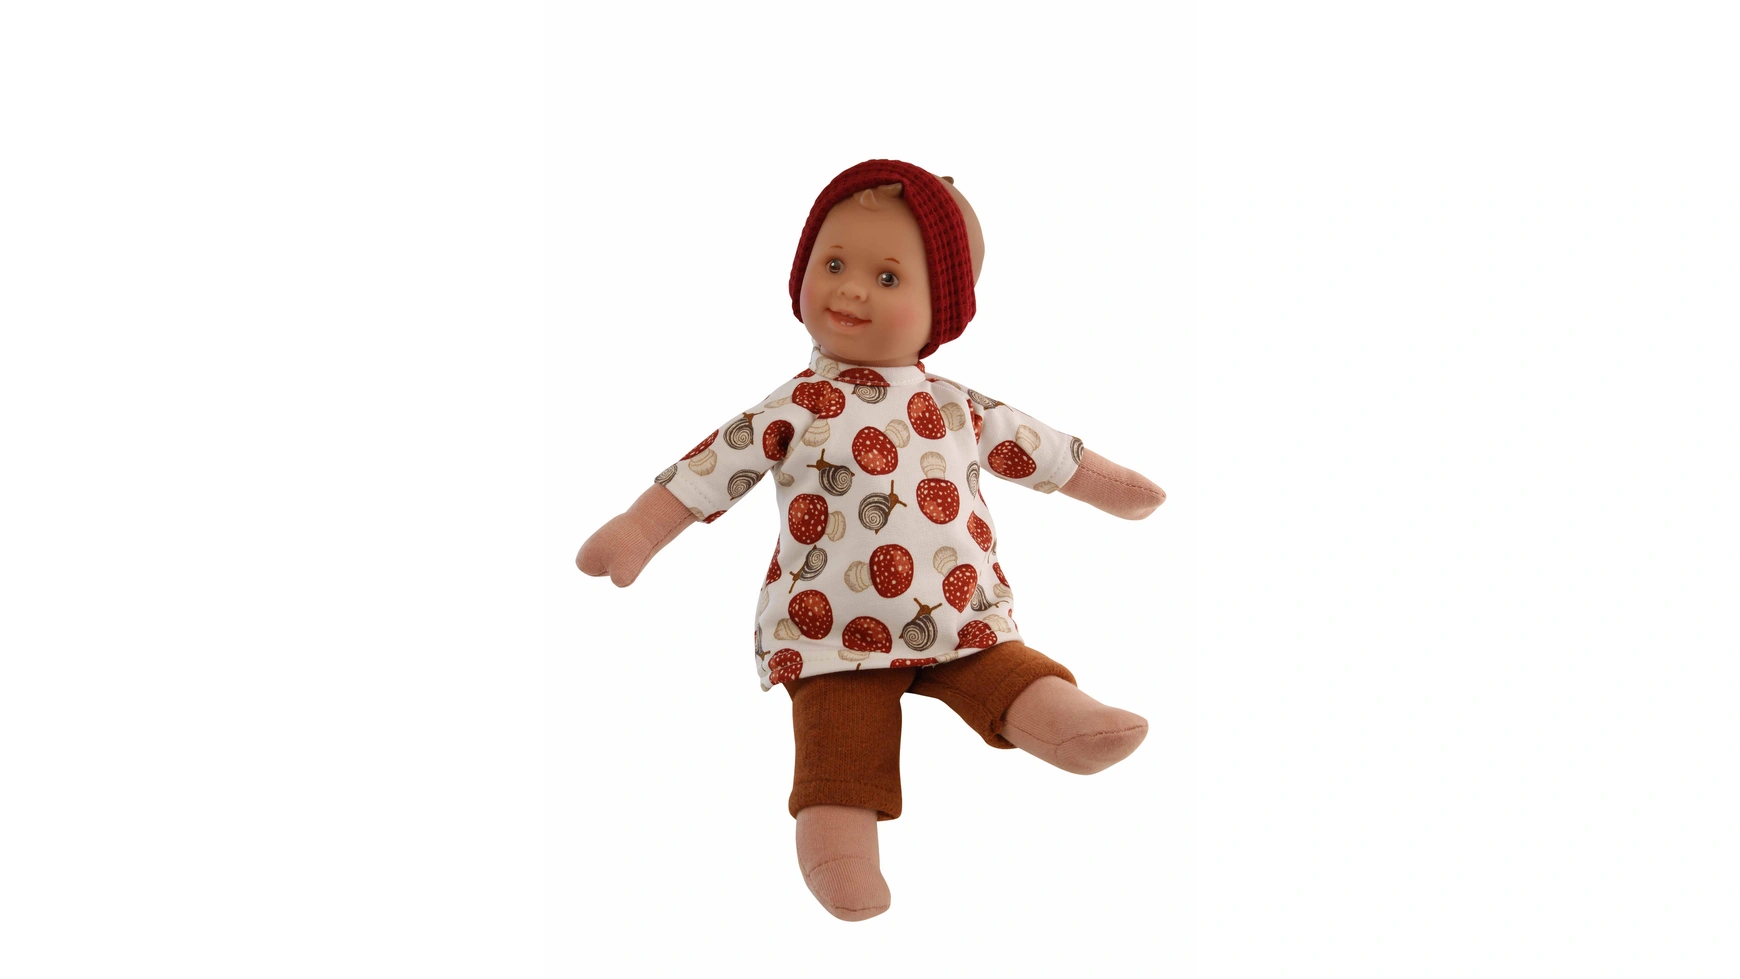 Куклы Schildkroet-Puppen кудри 30 см, роспись волос, карие глаза, одежда улитка